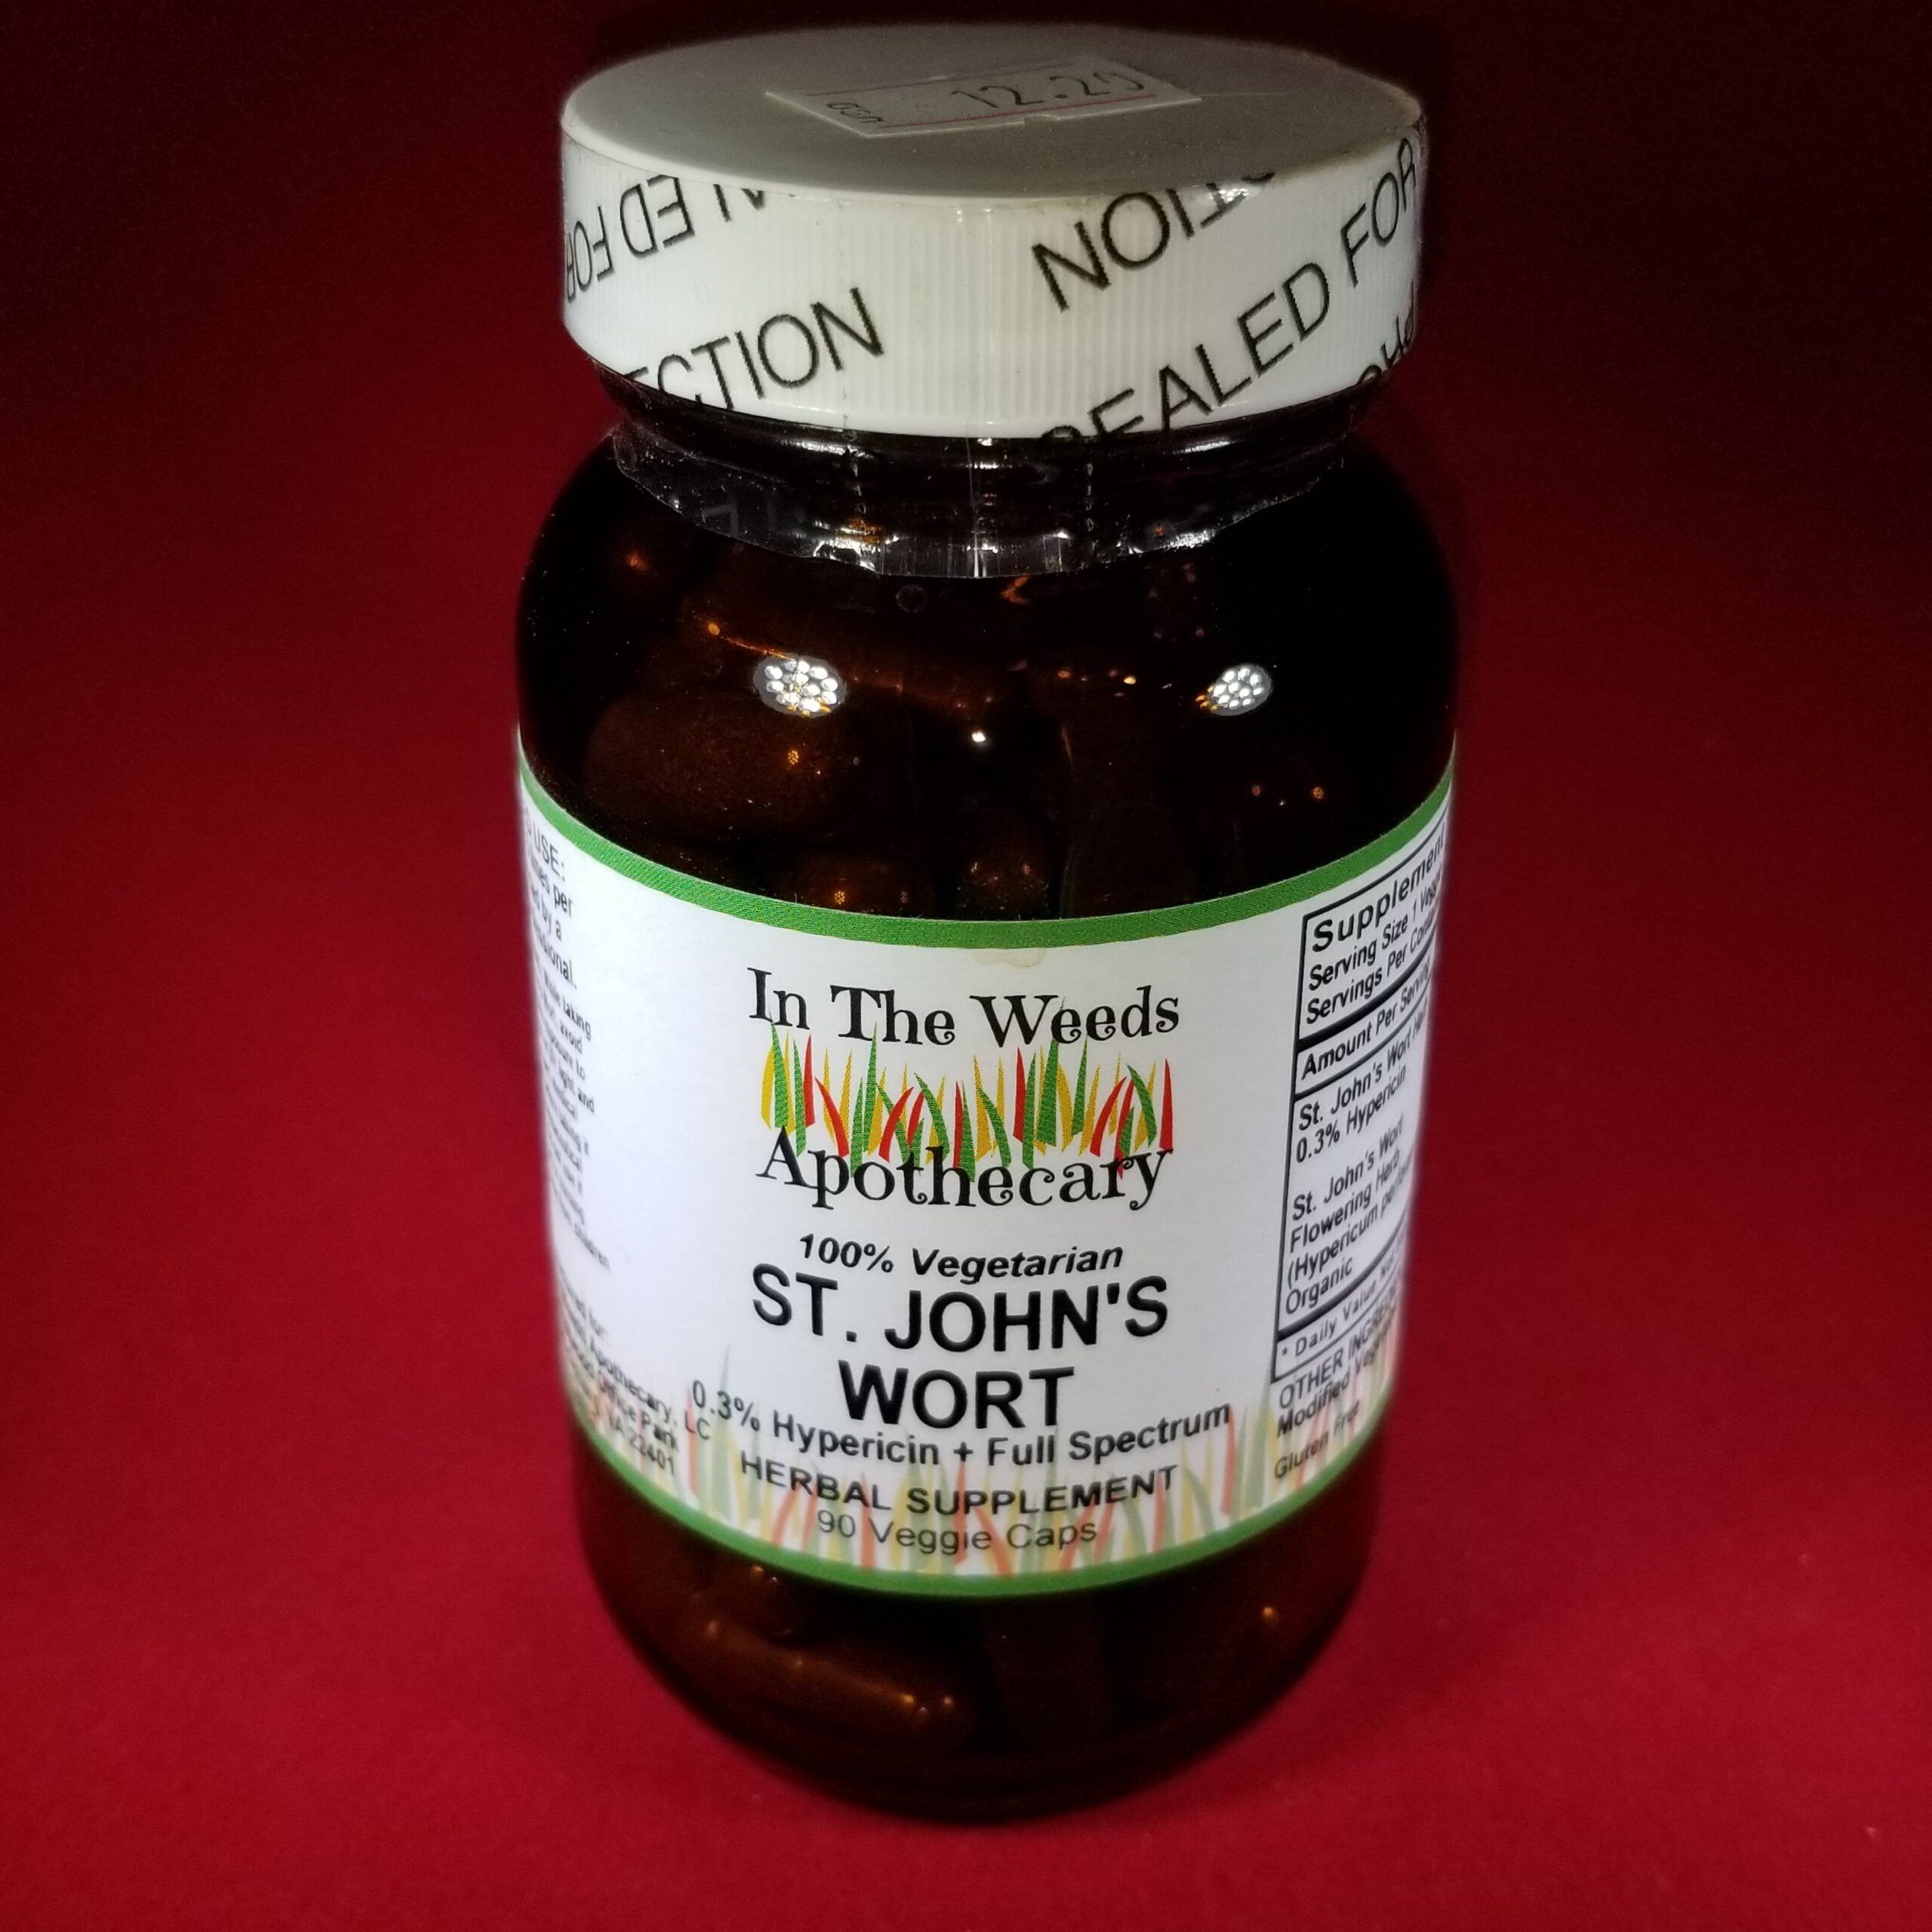 St Johns Wort Capsules – 90 Kosher Vegan Capsules Now with Organic St. John’s Wort & Potent Extract